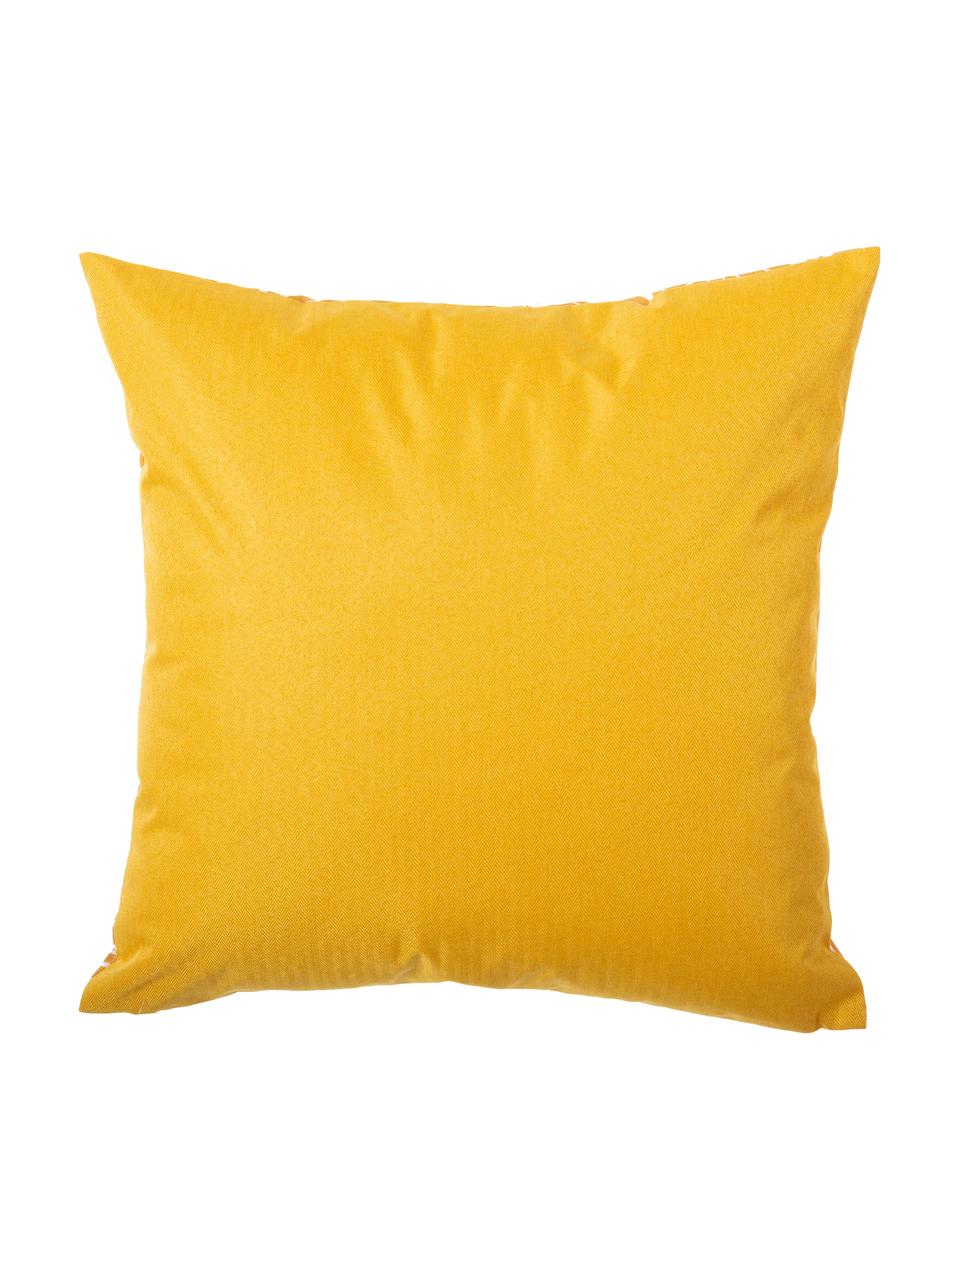 Poduszka zewnętrzna z wypełnieniem Sanka, 100% poliester, Żółty, S 45 x D 45 cm